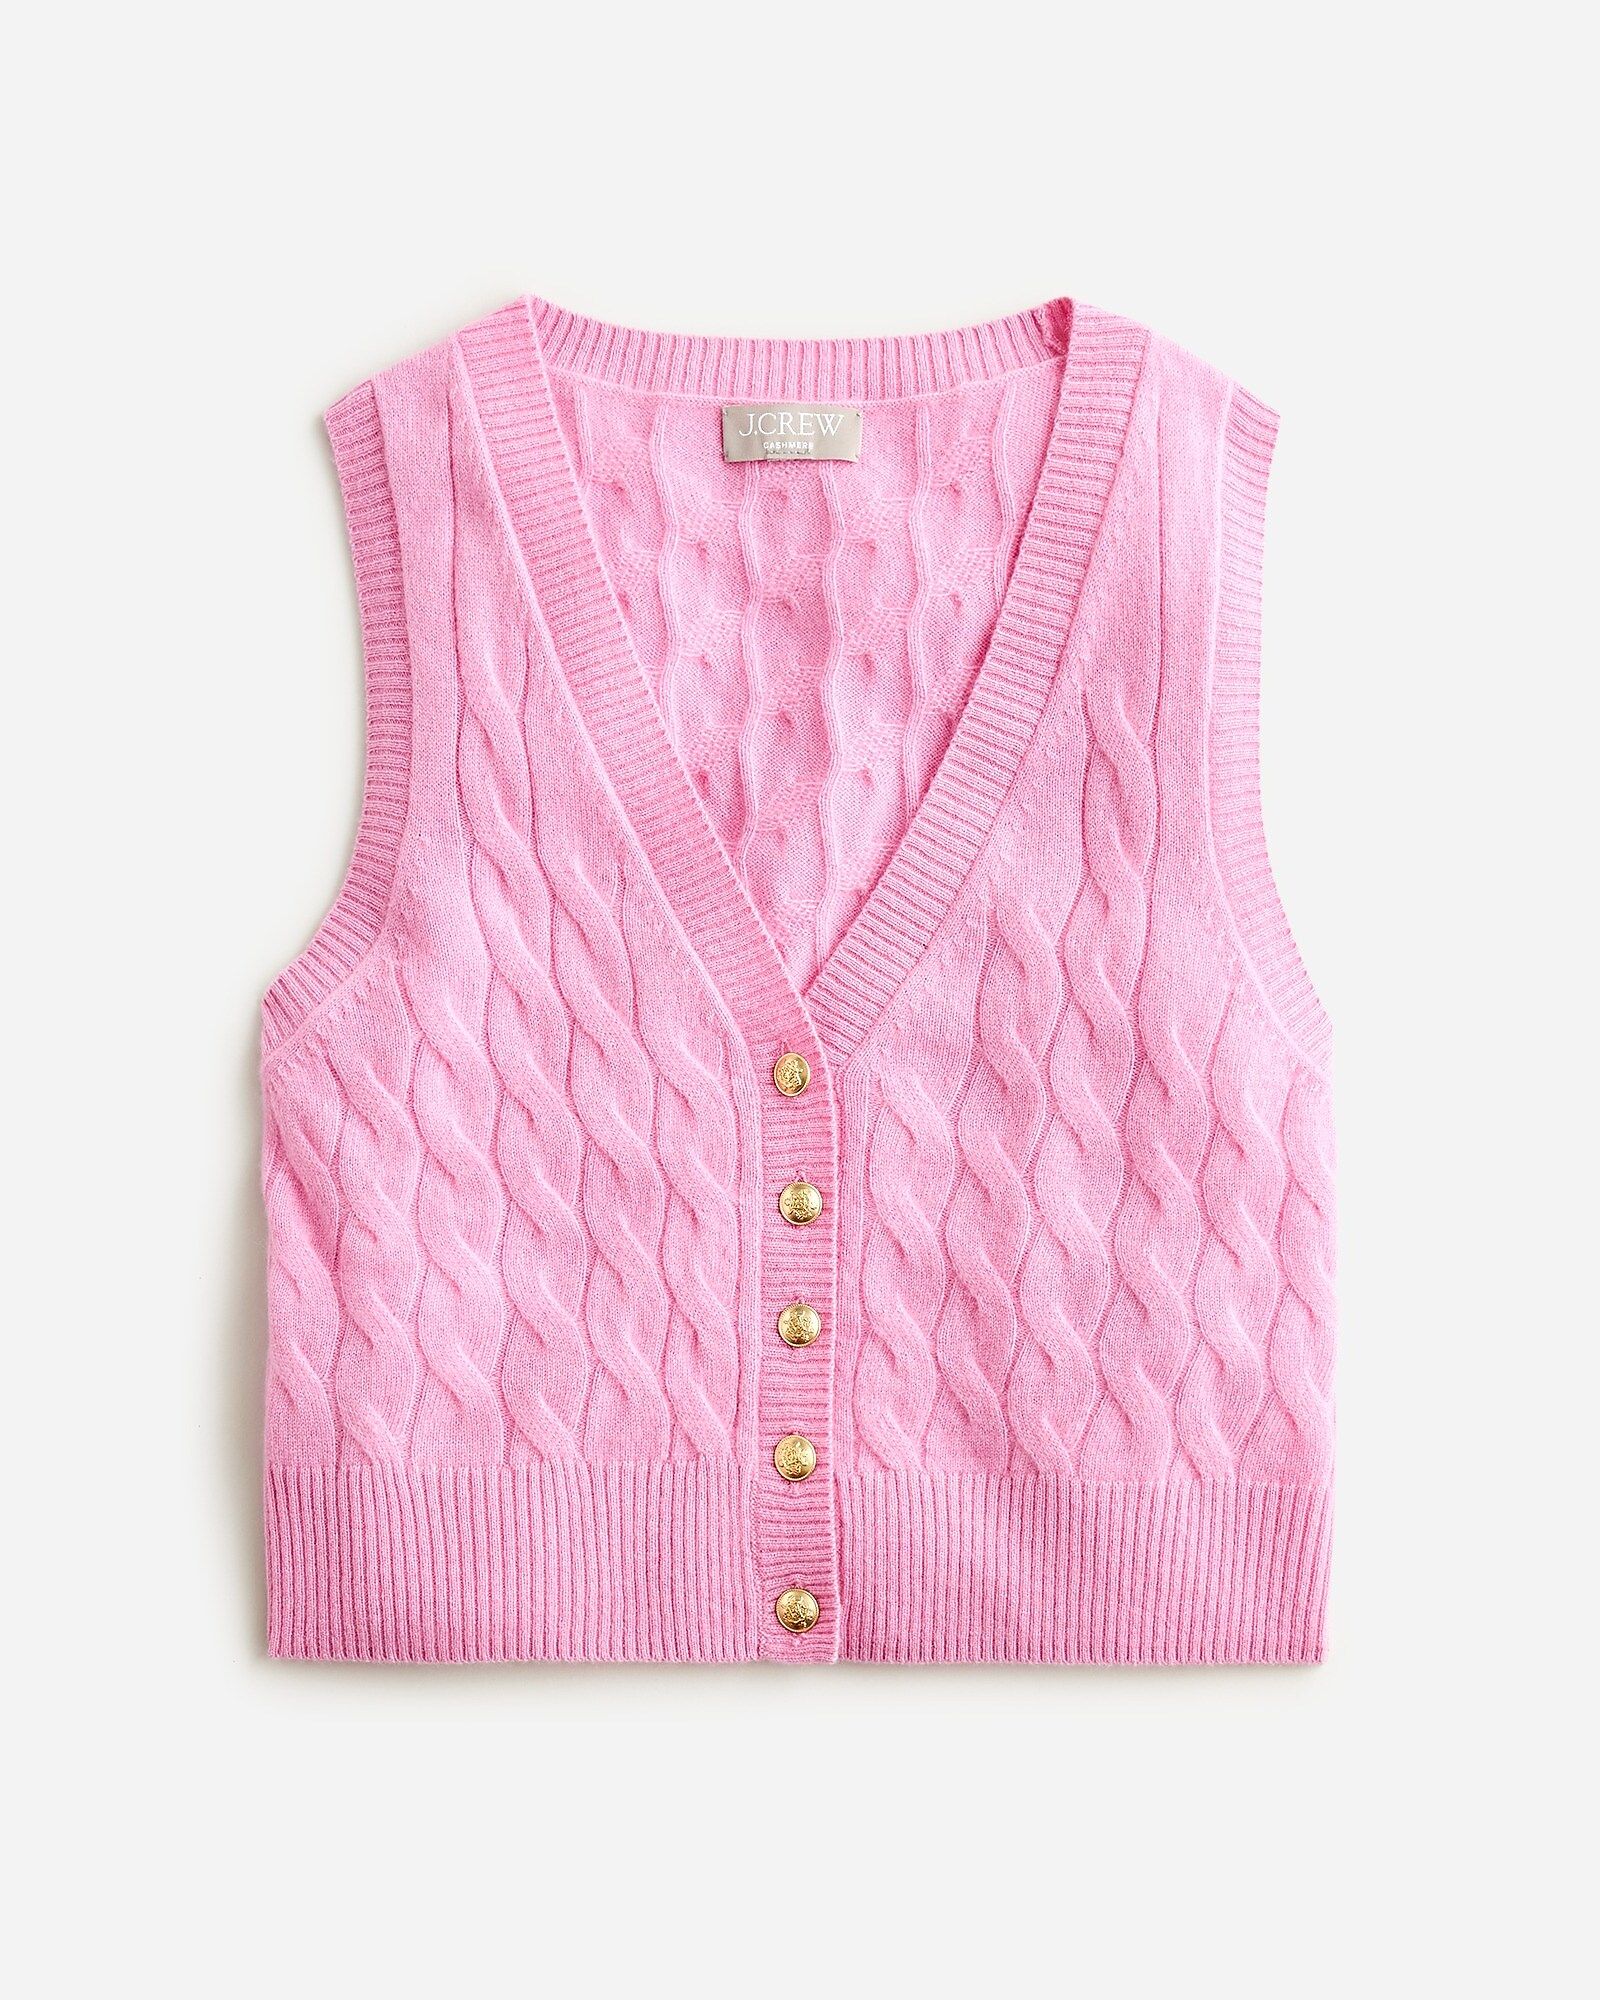 Cashmere shrunken cable-knit sweater-vest | J.Crew US